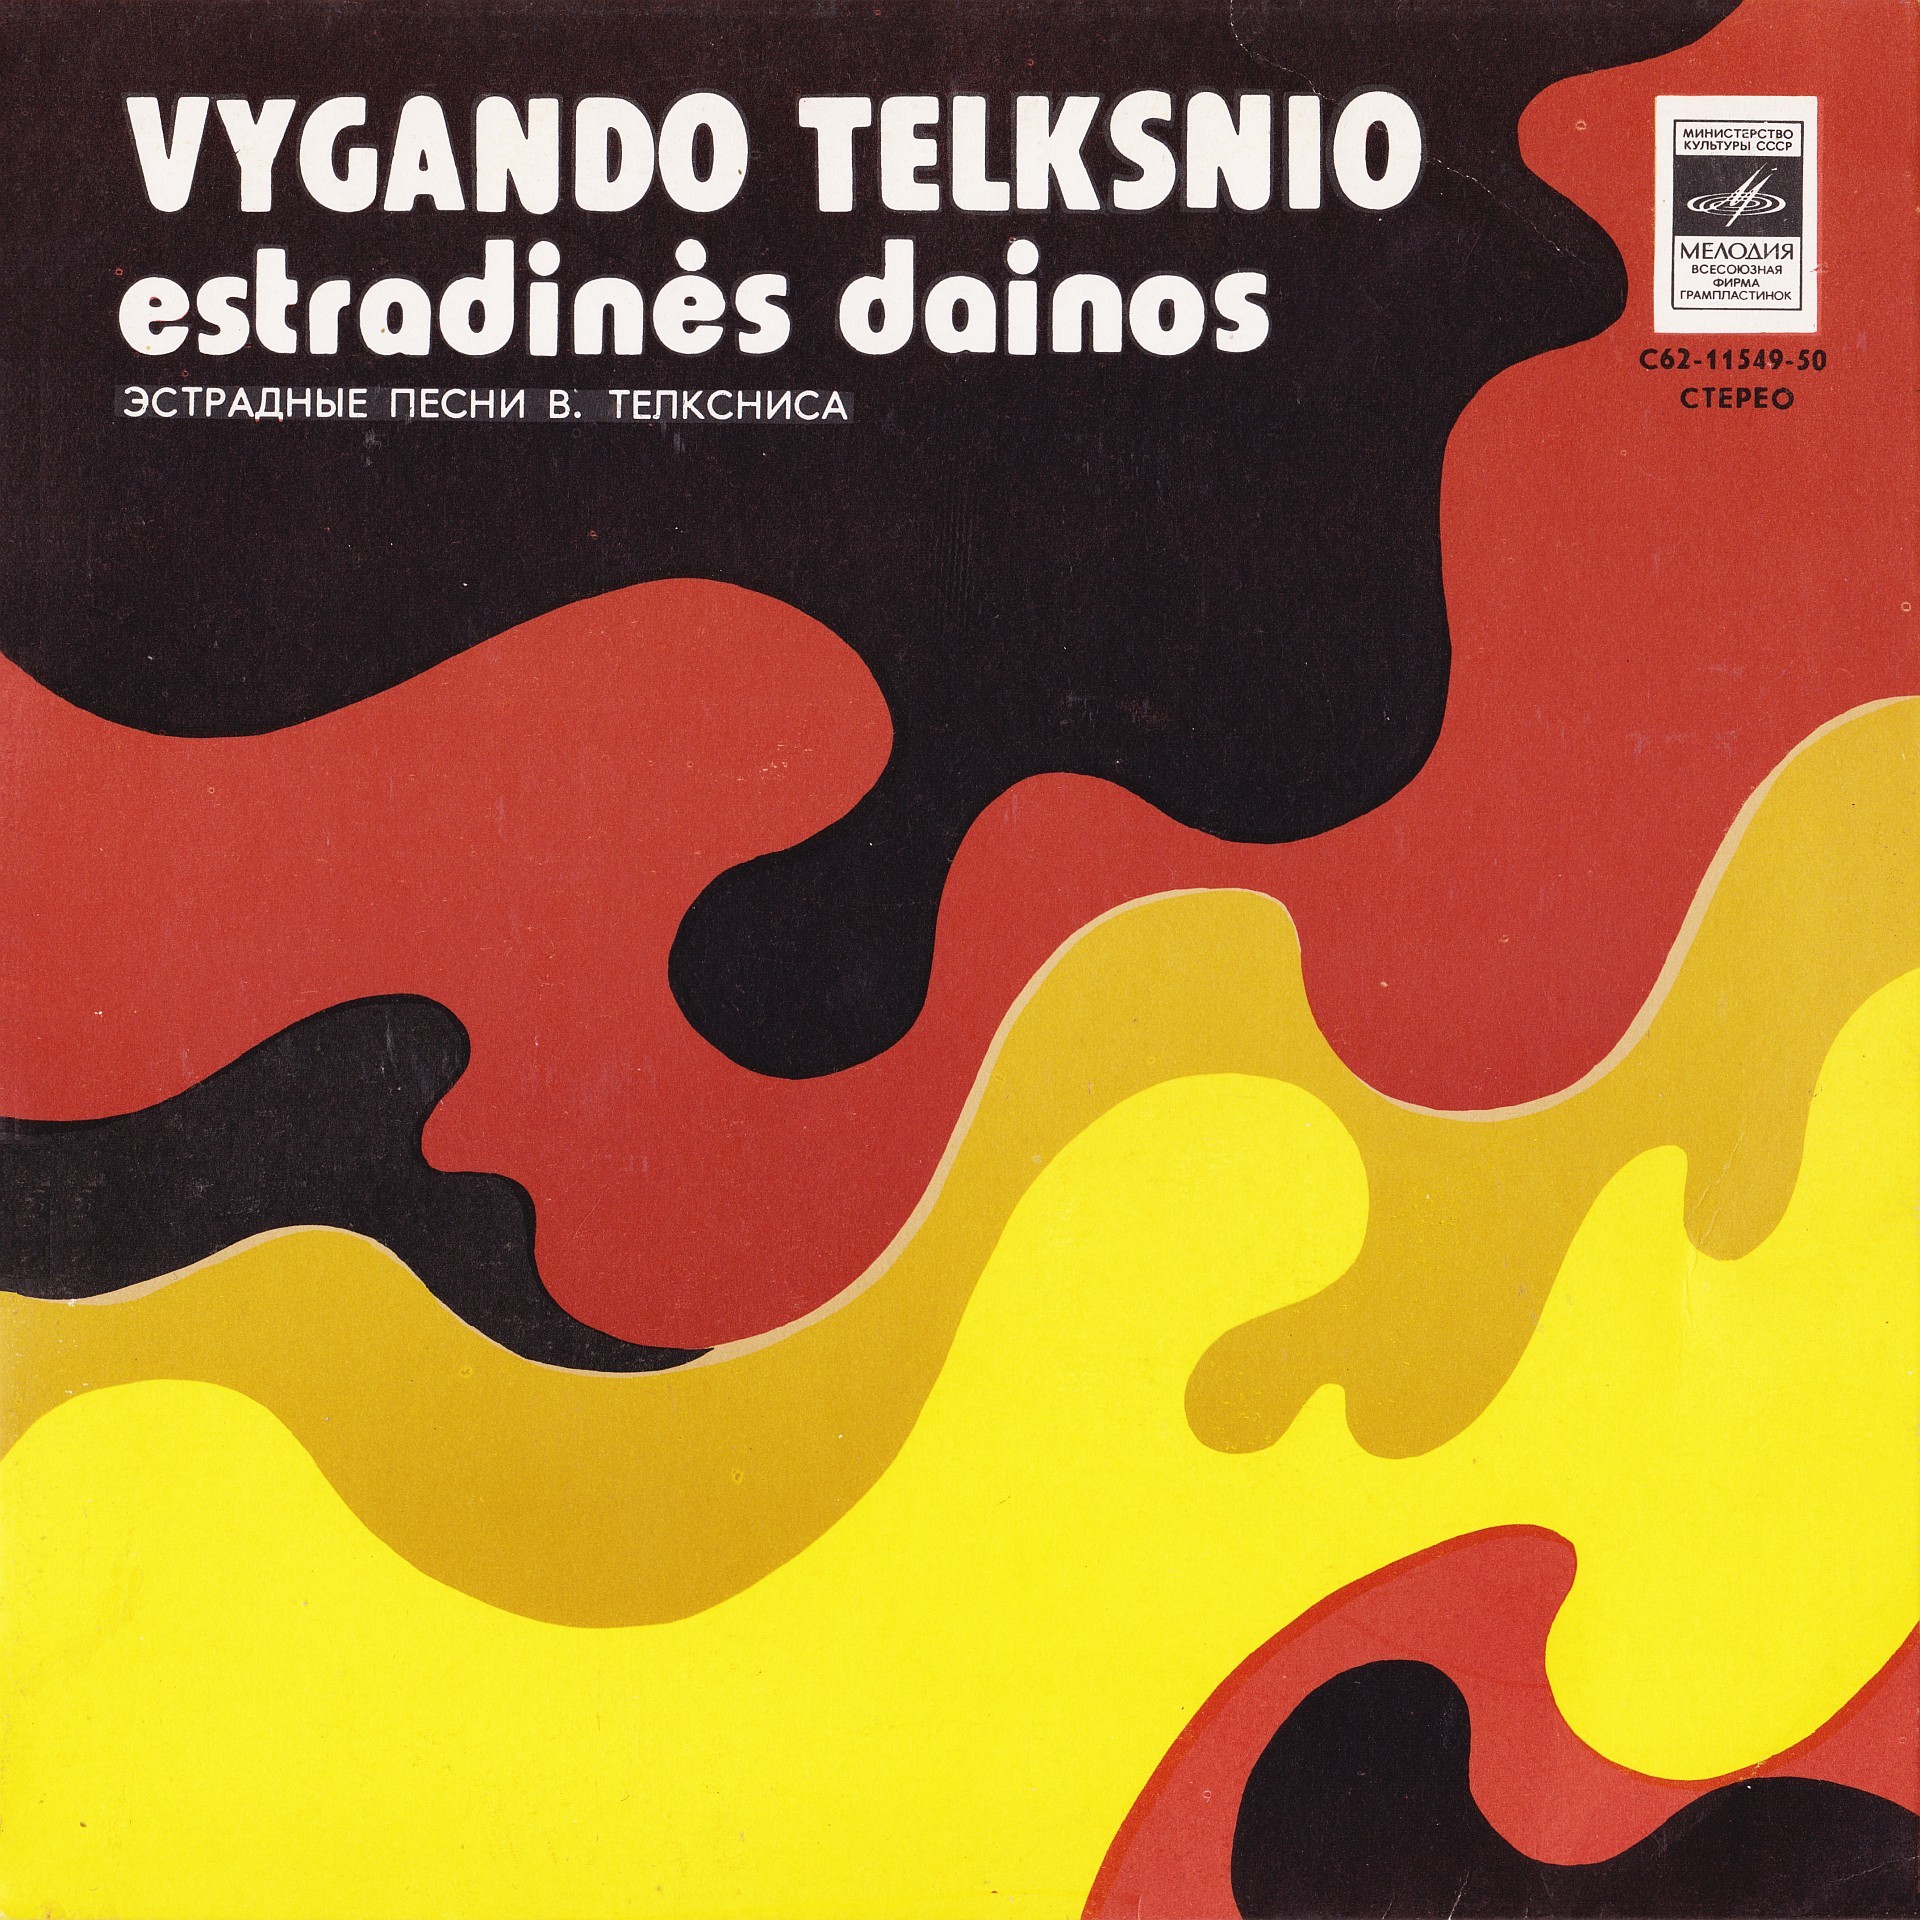 Vygandas Telksnys / ПЕСНИ В. ТЕЛЬКСНИСА (1934) — на литовском яз